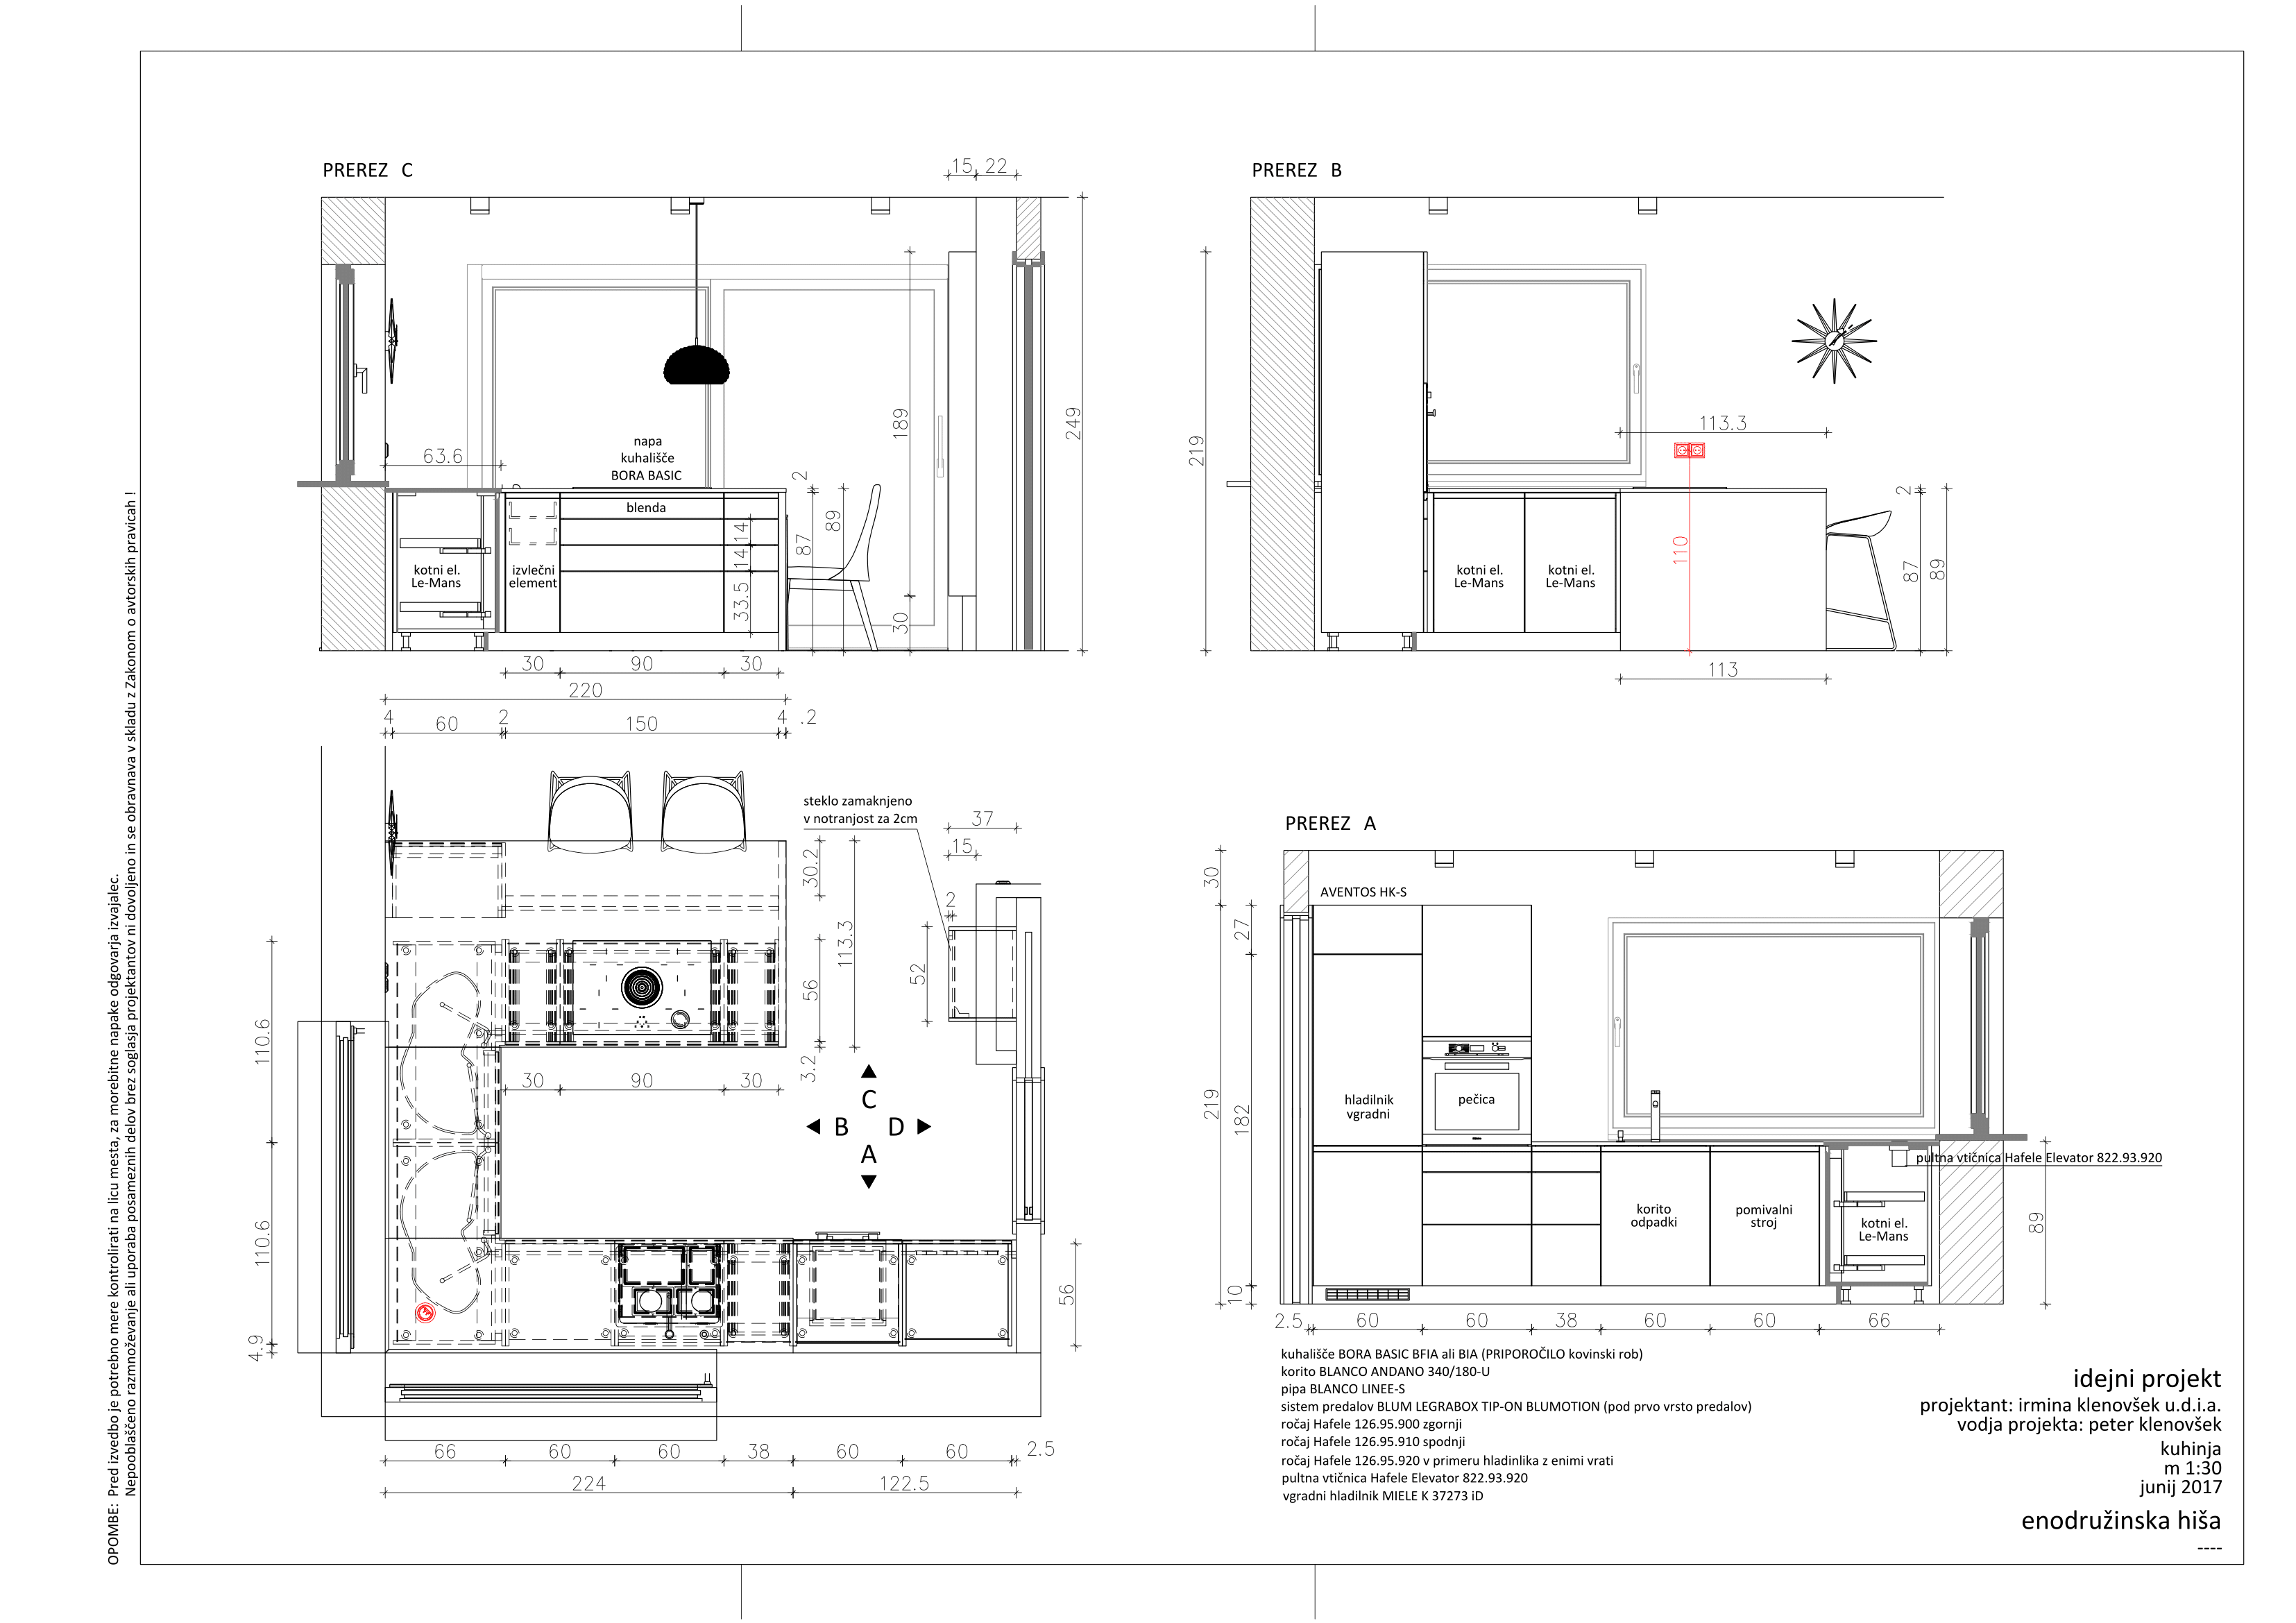 Design of interior design of rooms
